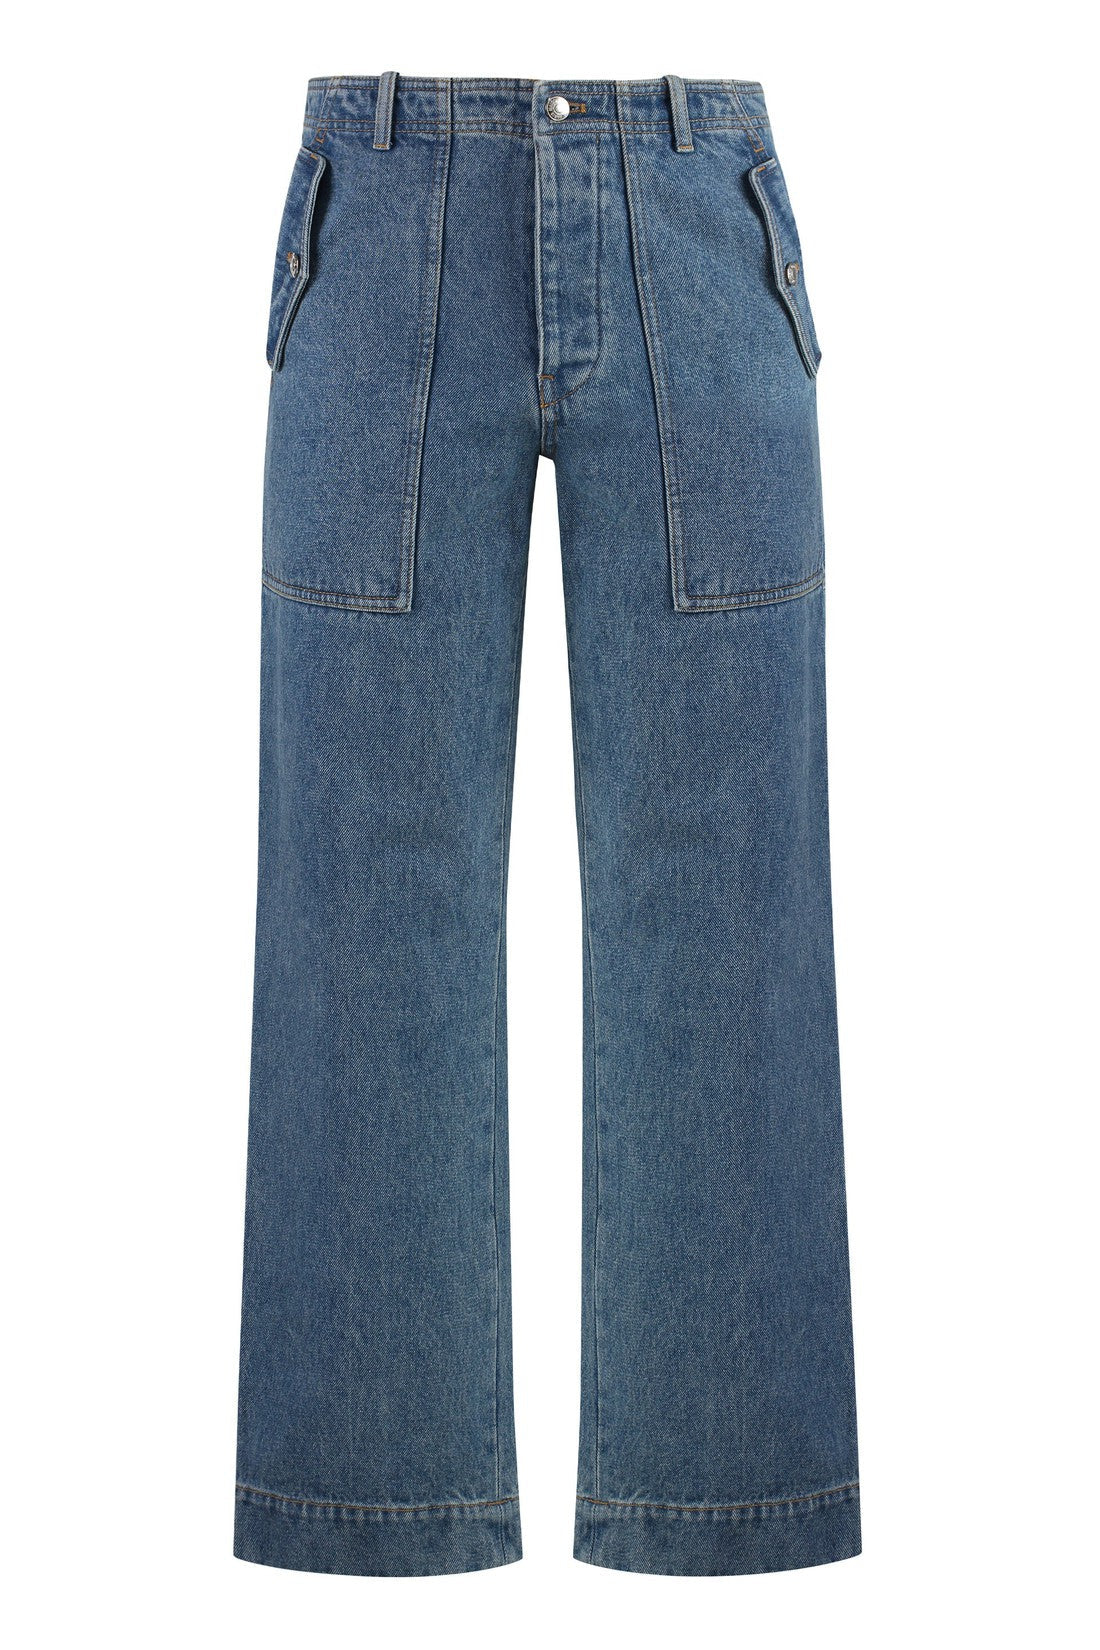 Maison Kitsuné-OUTLET-SALE-Straight leg jeans-ARCHIVIST